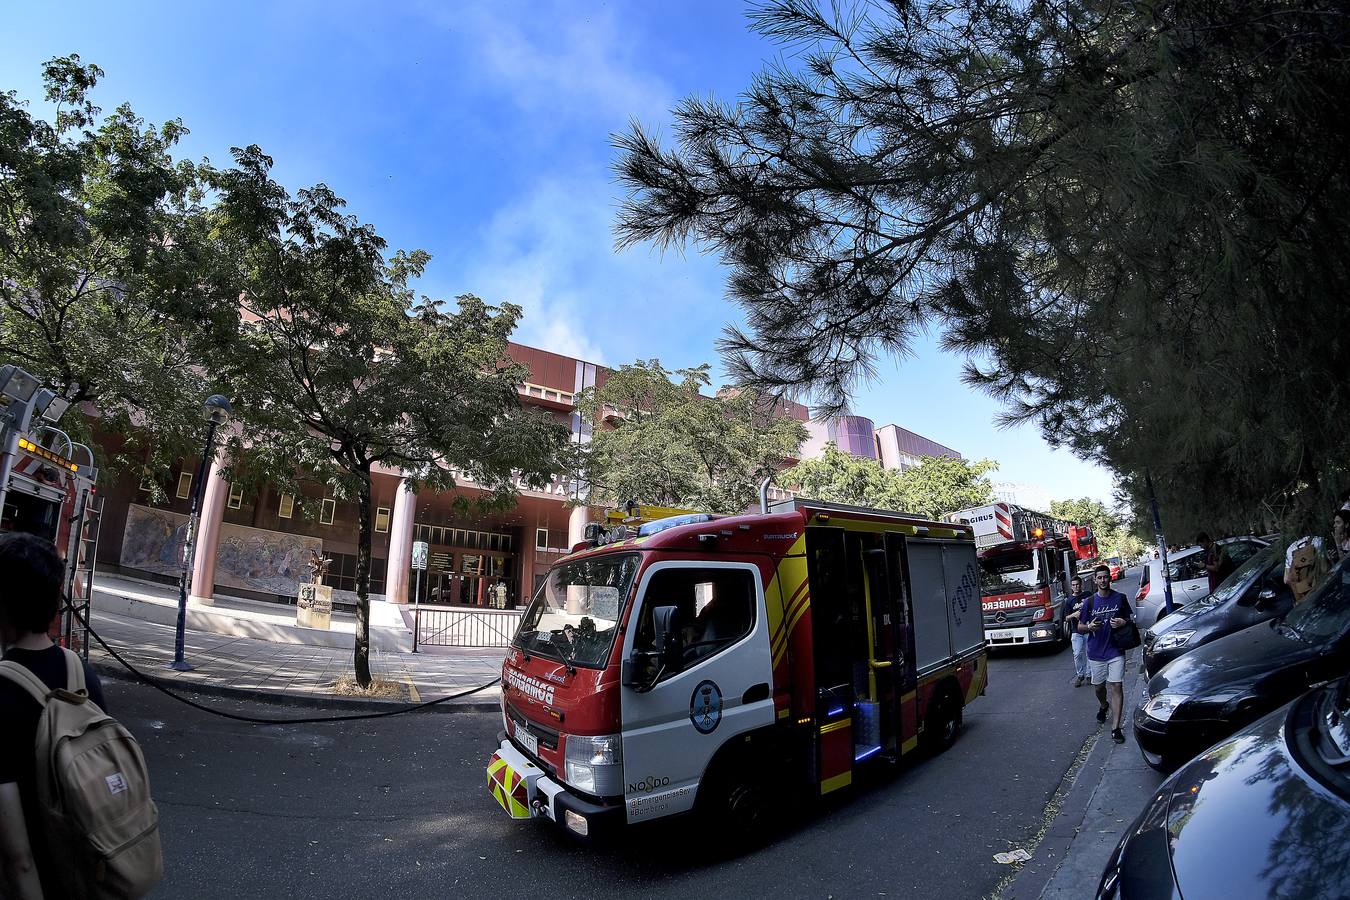 En imágenes, el incendio de la Escuela Superior de Ingeniería de Sevilla